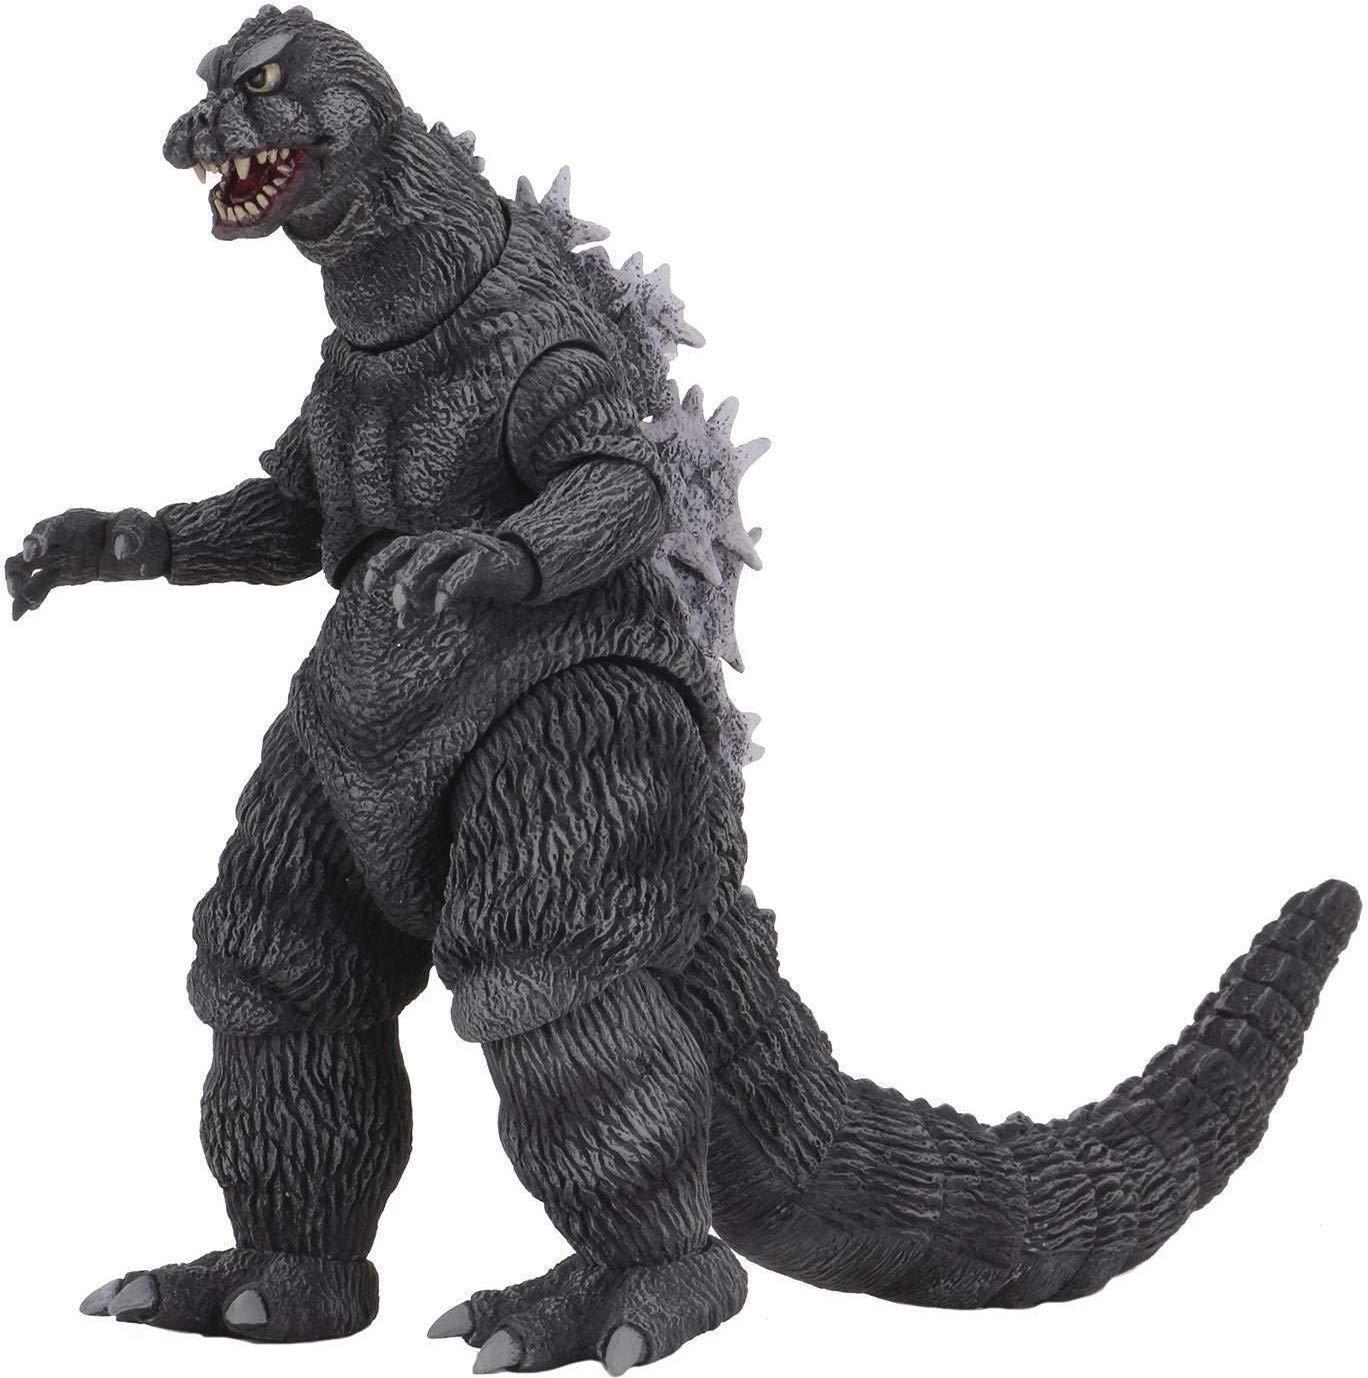 Babaya çocuk emanet ettim, döndüğümde Godzilla olmuştu